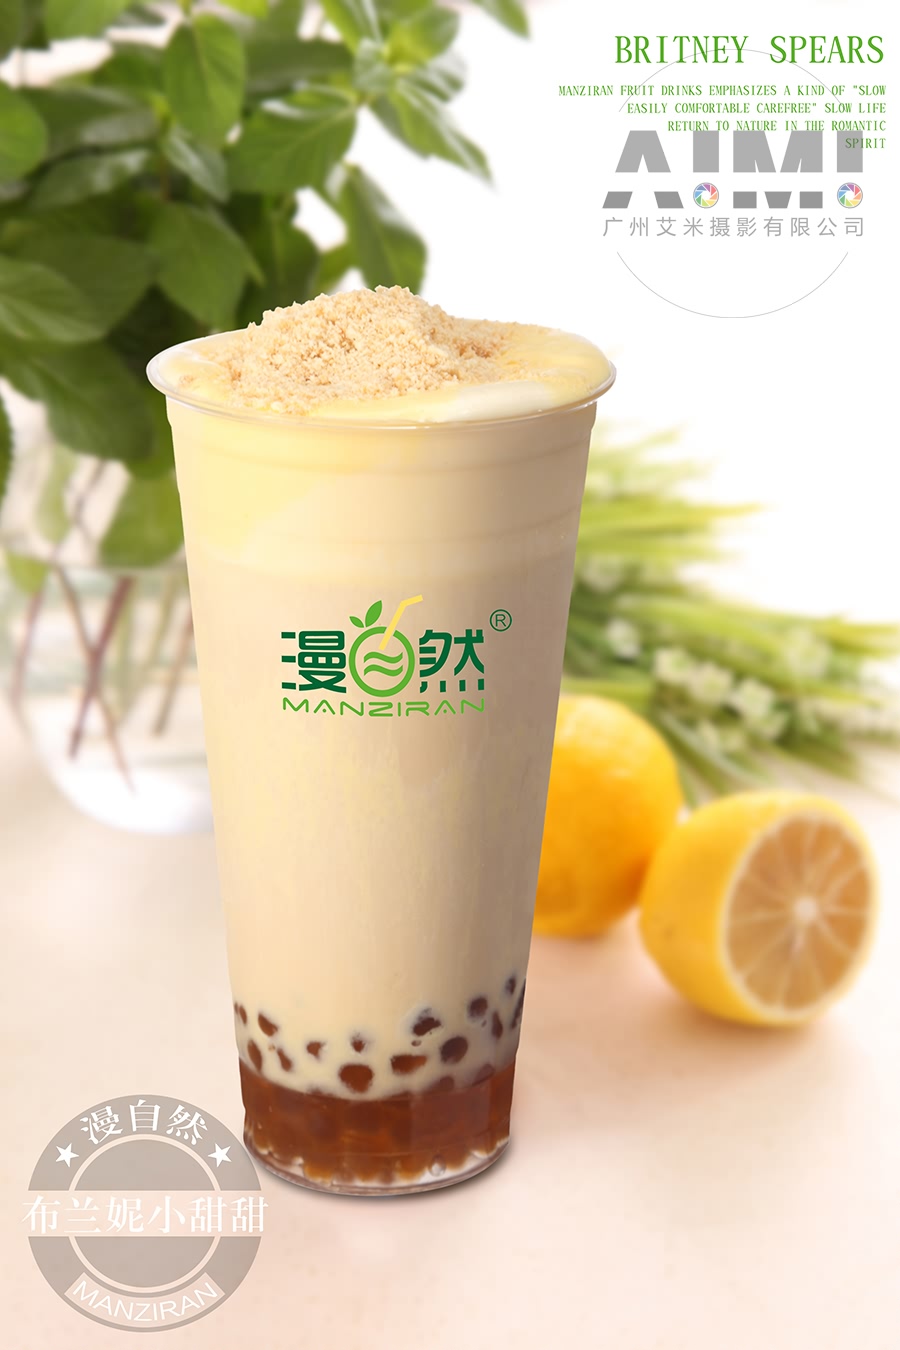 奶茶摄影设计 广告拍摄设计 广州摄影